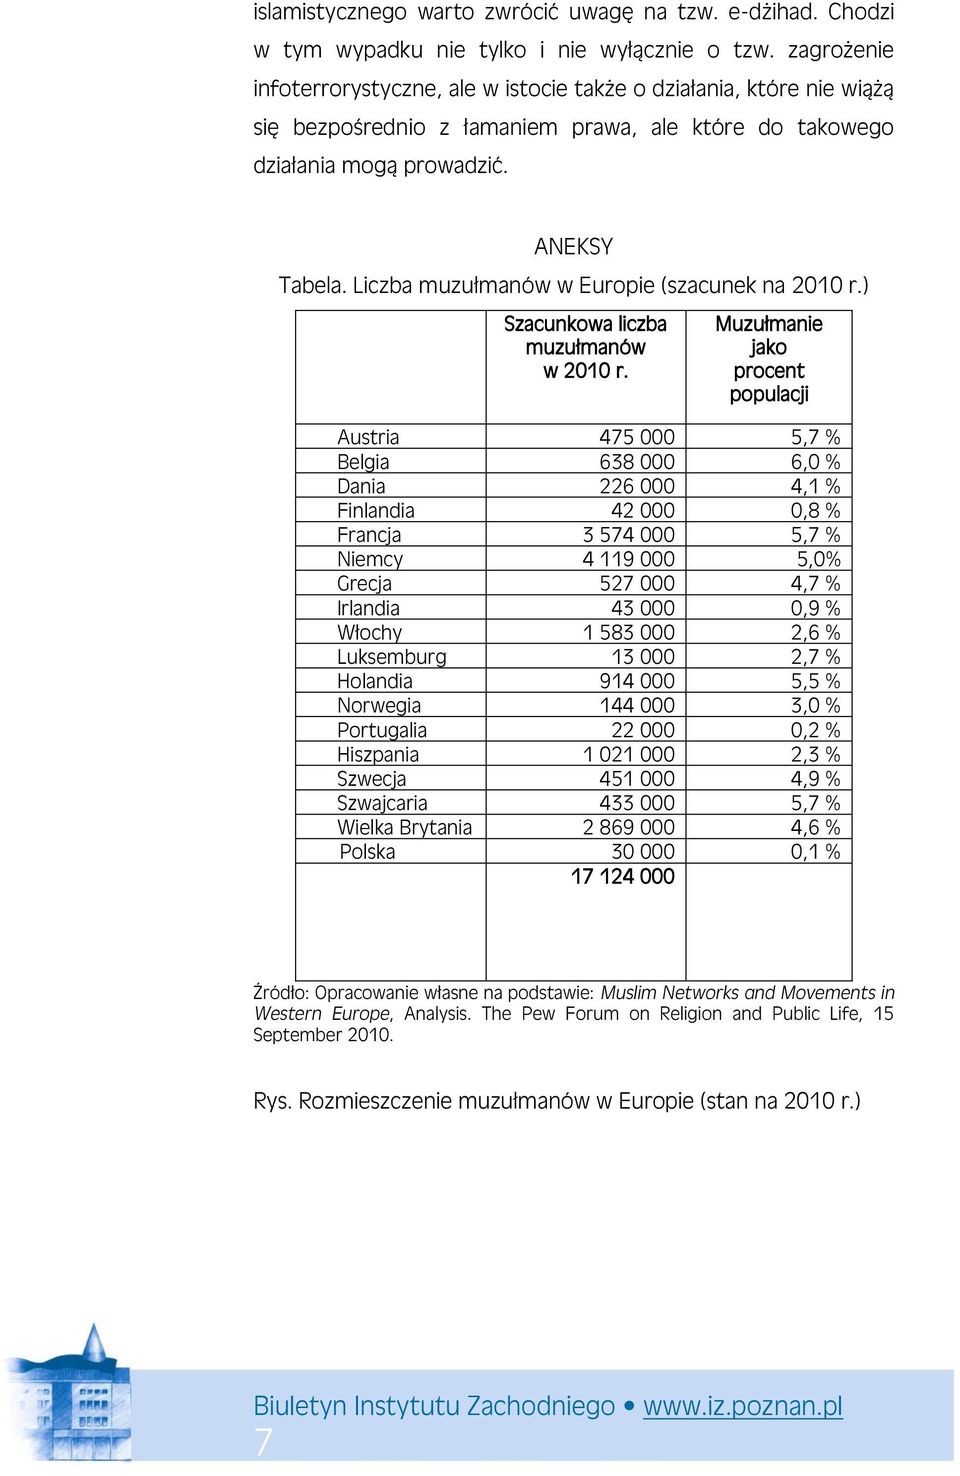 Liczba muzułmanów w Europie (szacunek na 2010 r.) PSzacunkowa liczba muzułmanów a ww 2010 r.